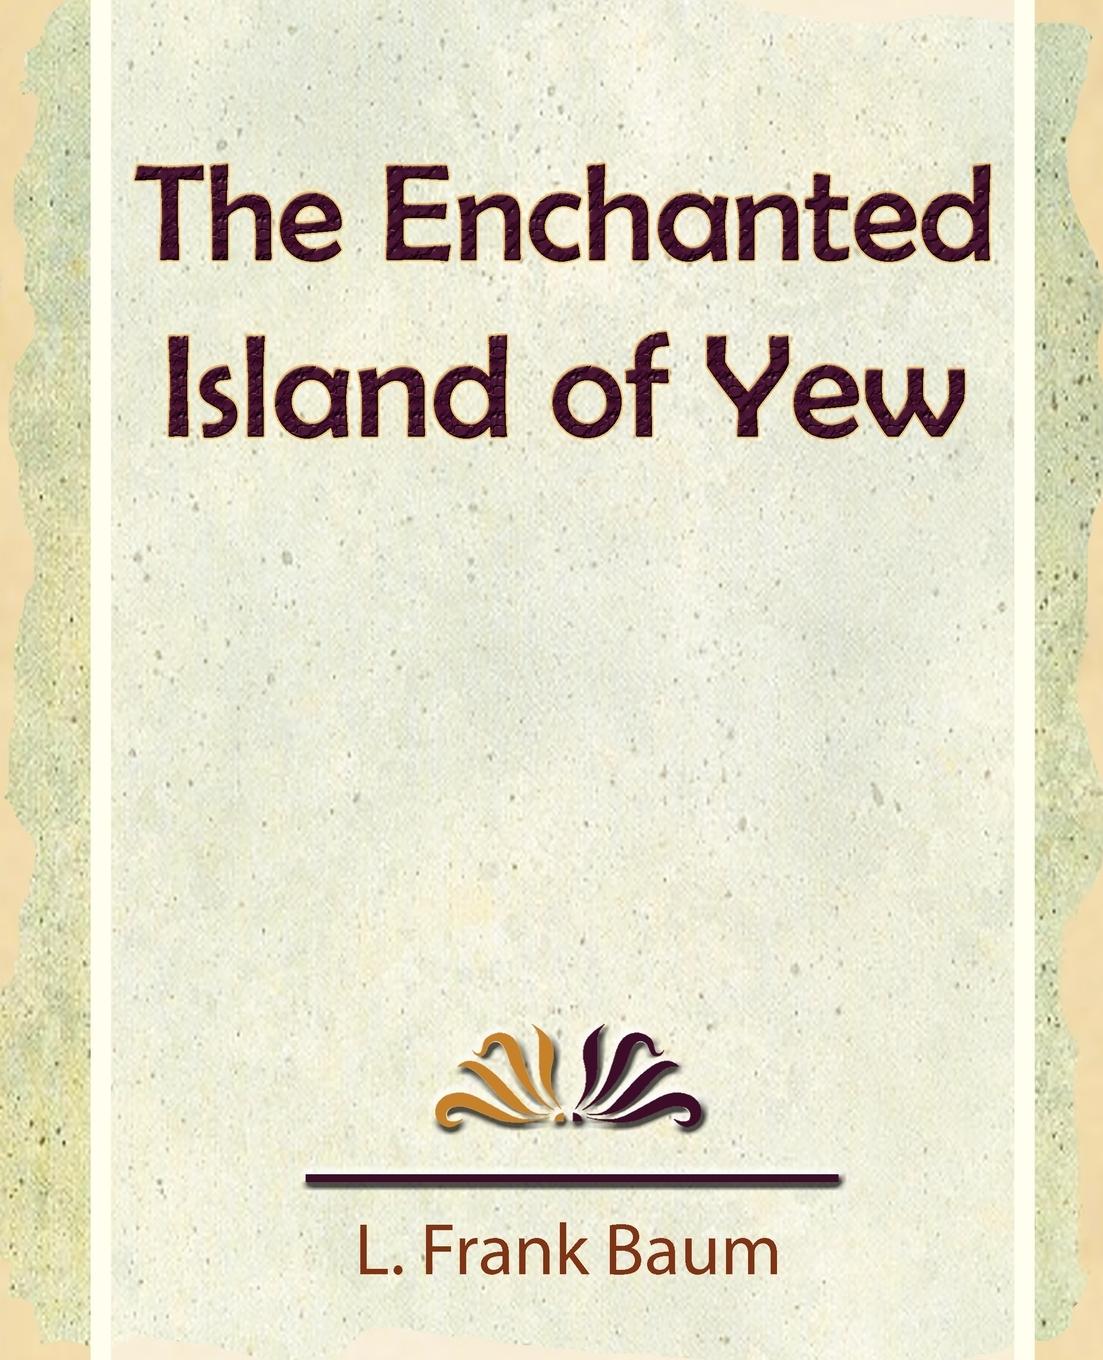 The Enchanted Island of Yew - Baum, L. Frank|L. Frank Baum